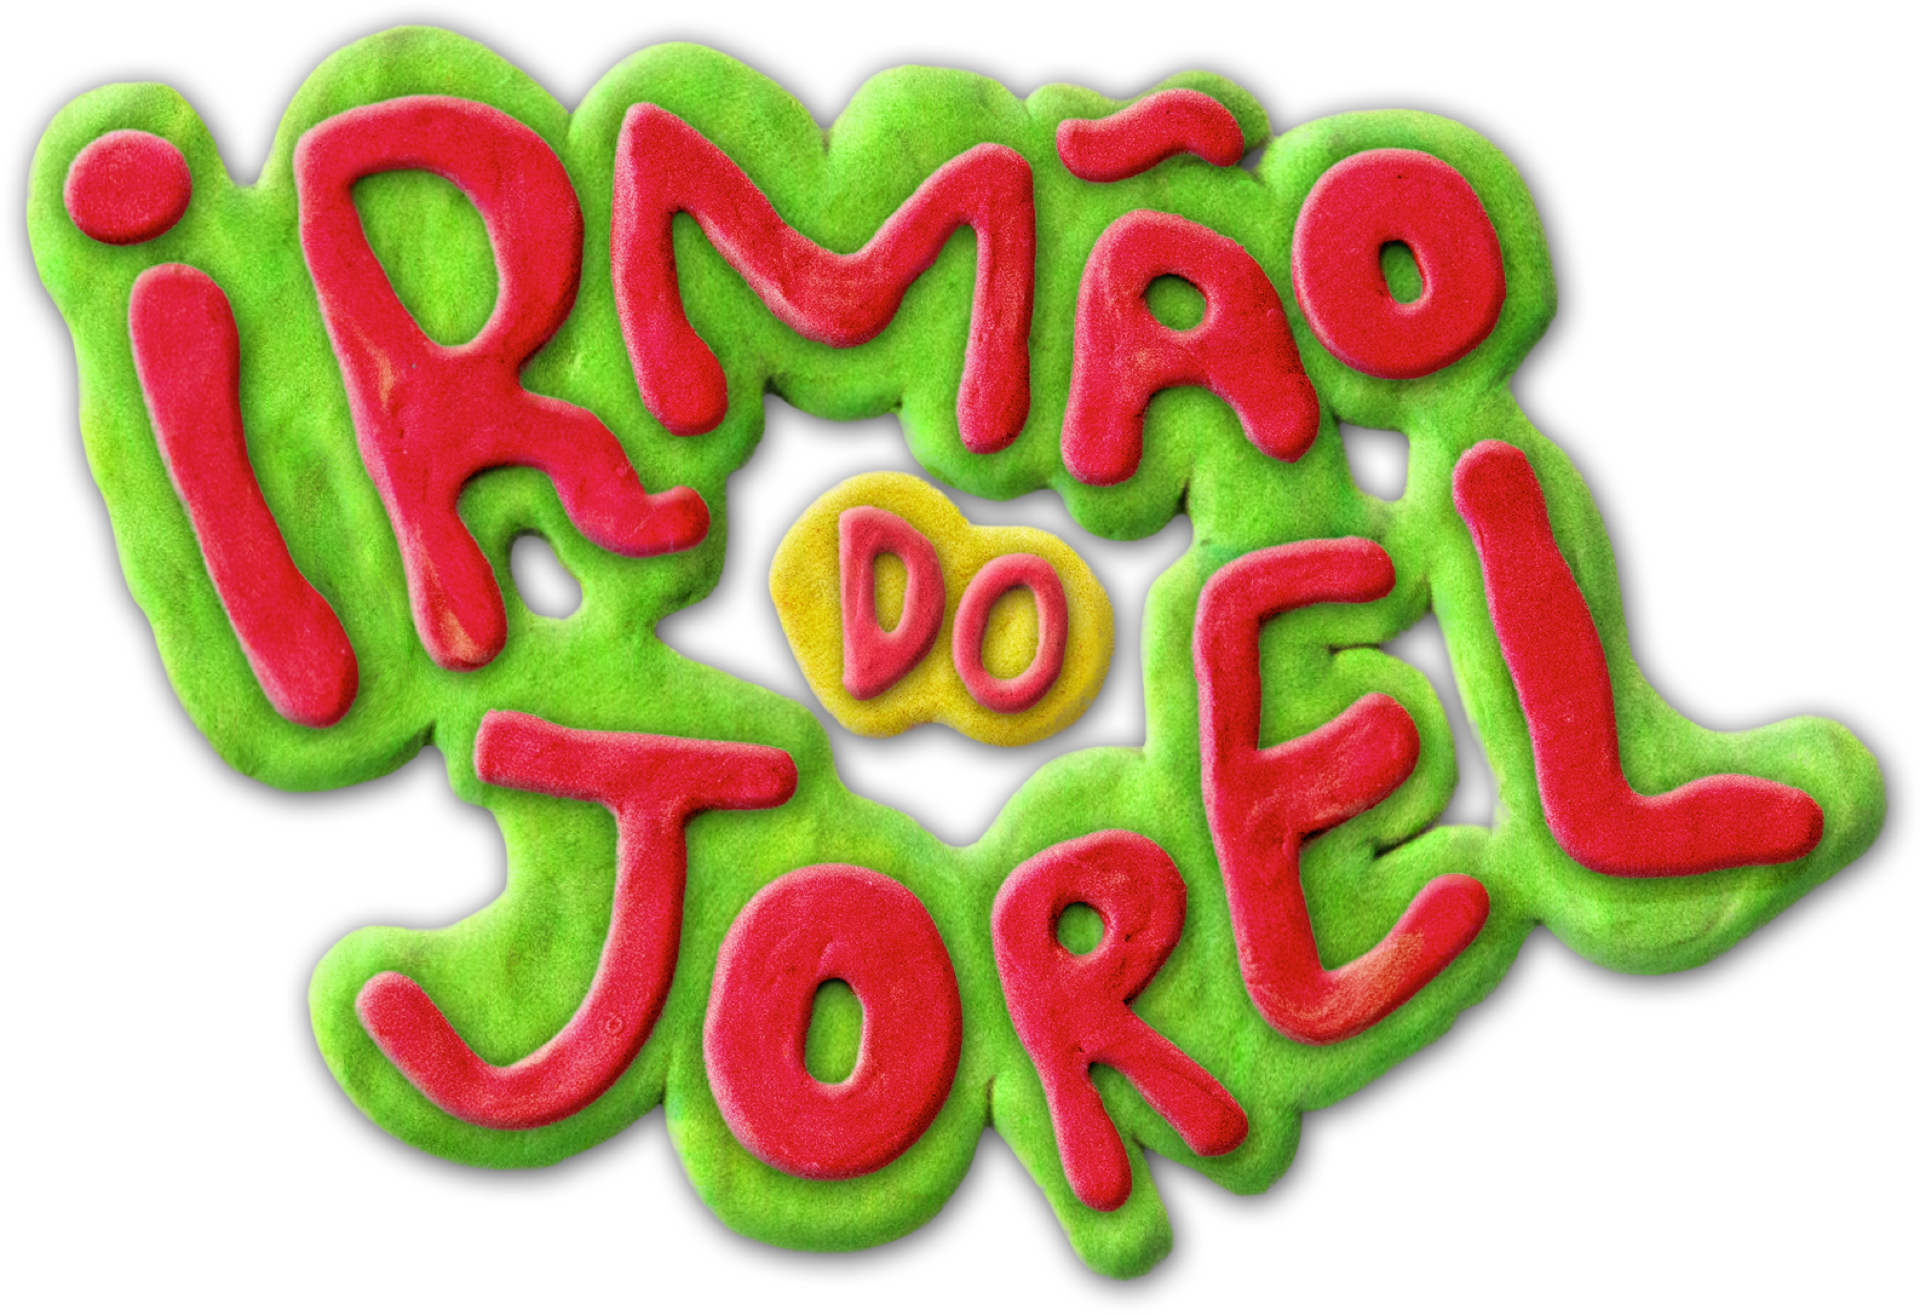 Cartoon Network Brasil - Não é só Irmão do Jorel que sofre com isso não  😭🤡 #cartoonnetwork #regularshow